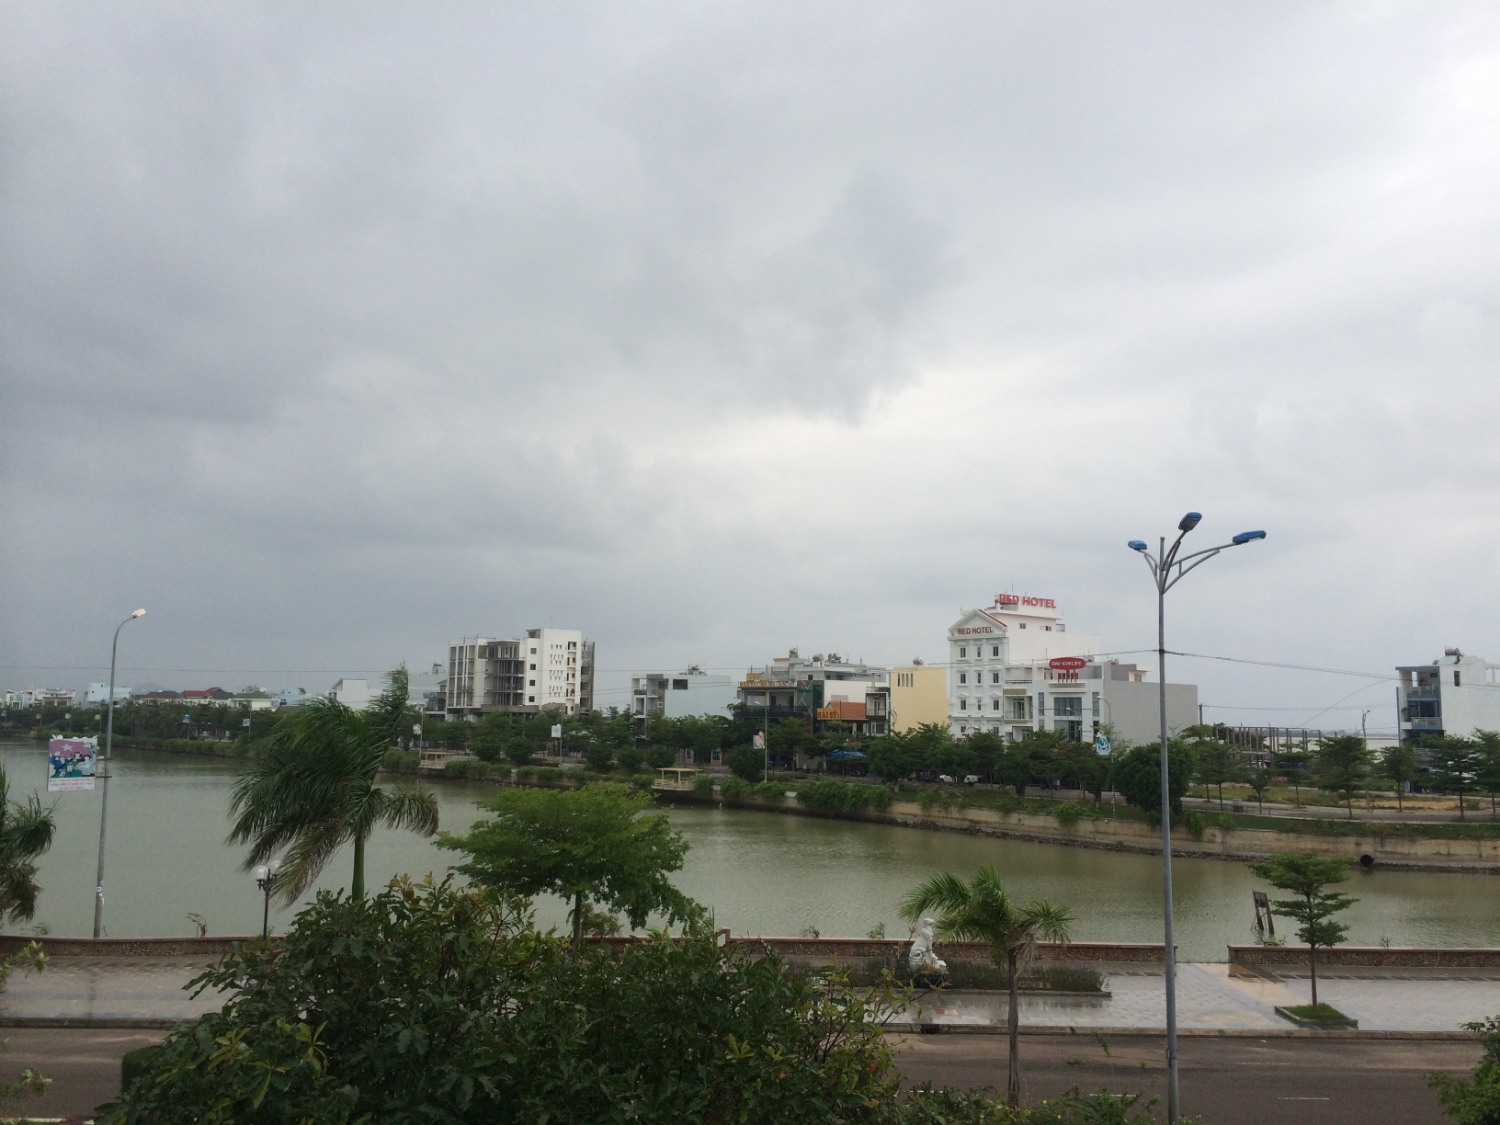 Hồ sinh thái Đống Đa, thành phố Quy Nhơn